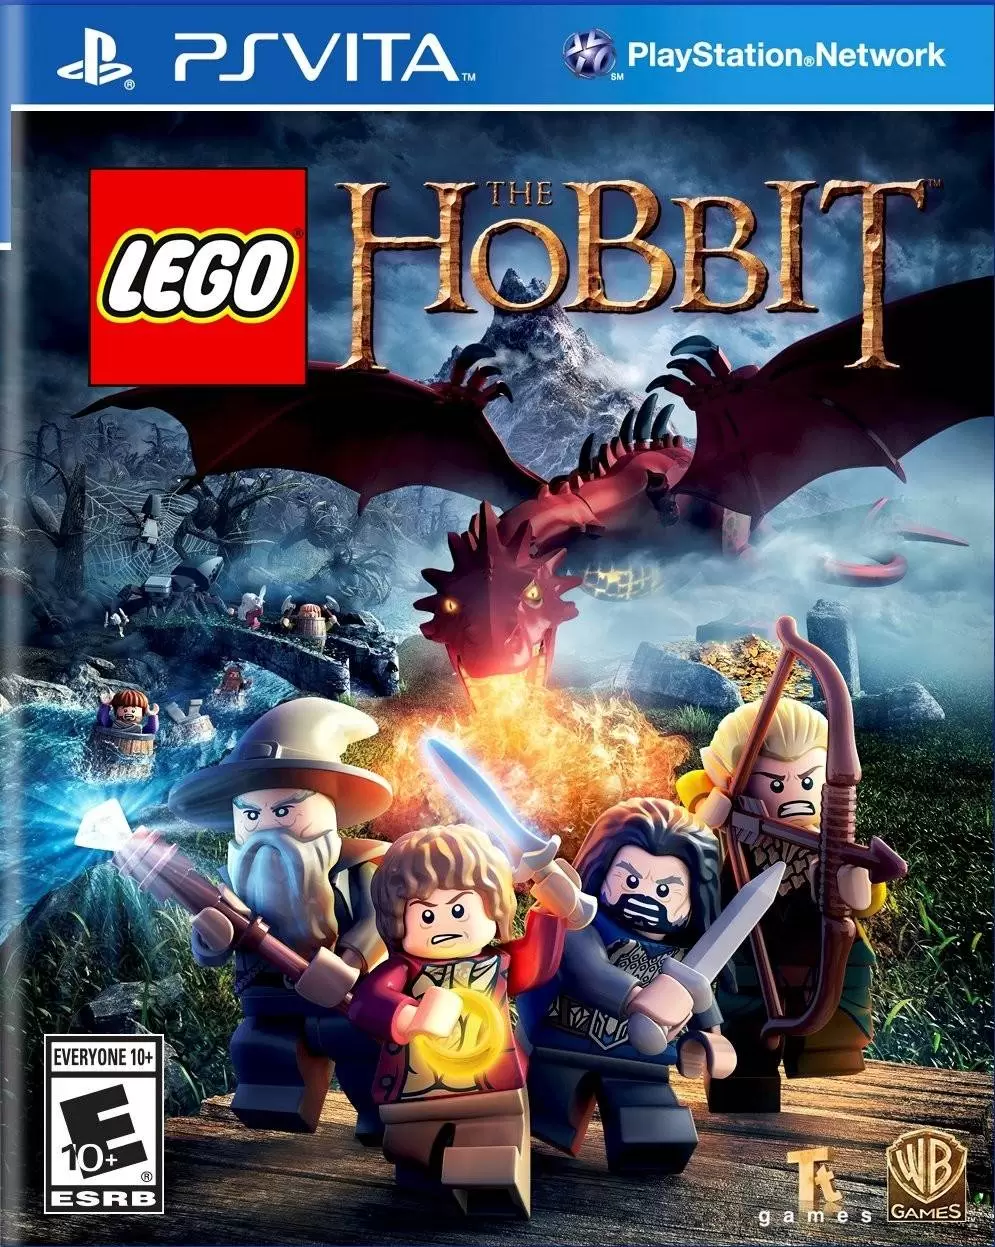 PS Vita Games - LEGO The Hobbit